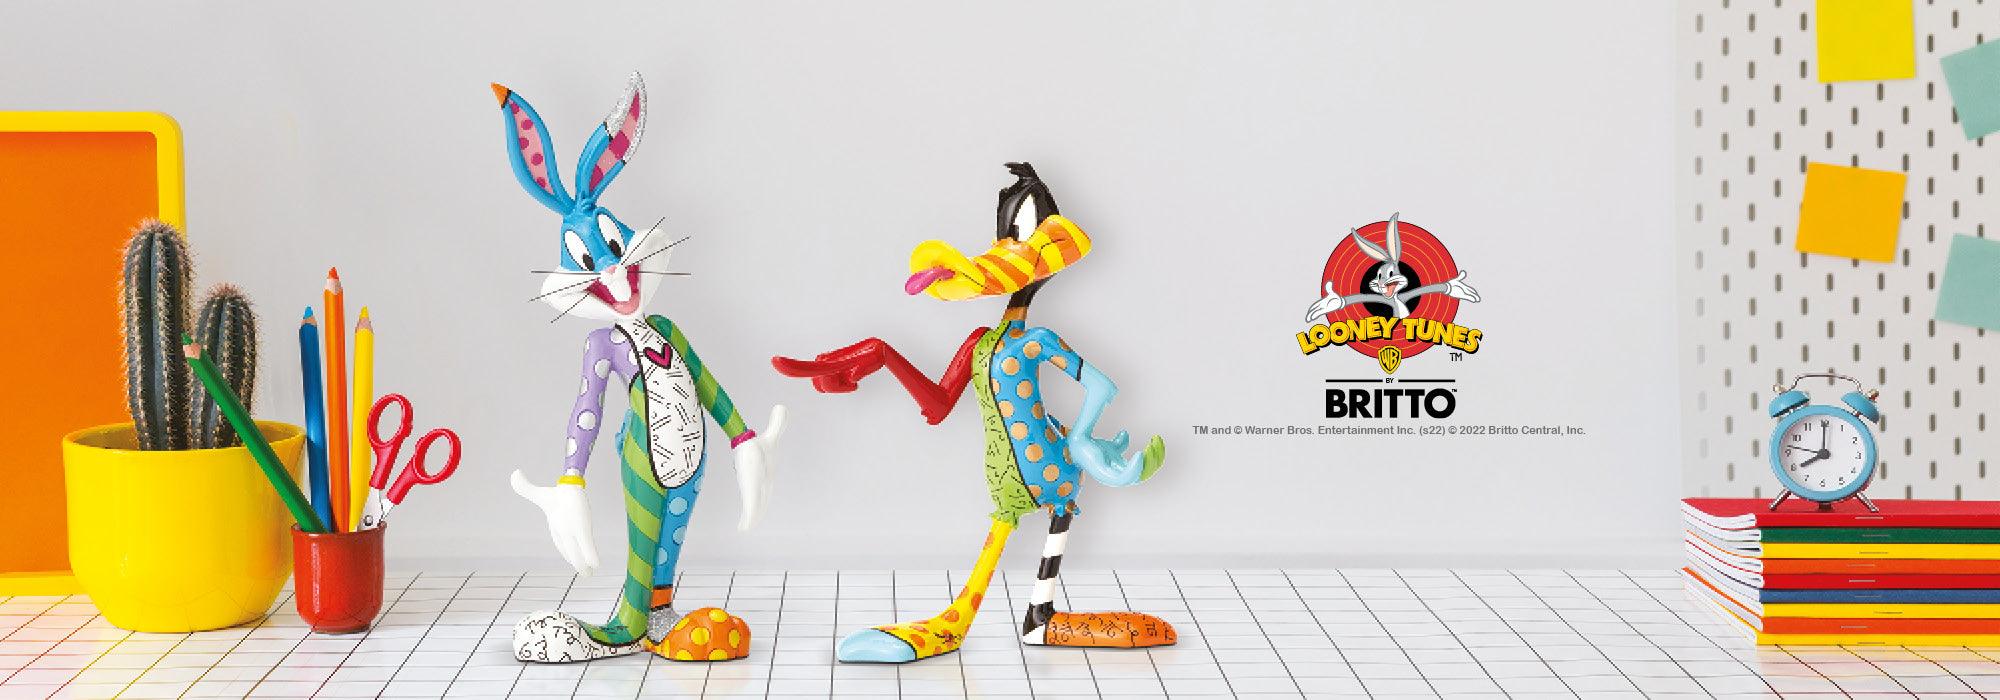 Looney Tunes by Romero Britto – Enesco Gift Shop